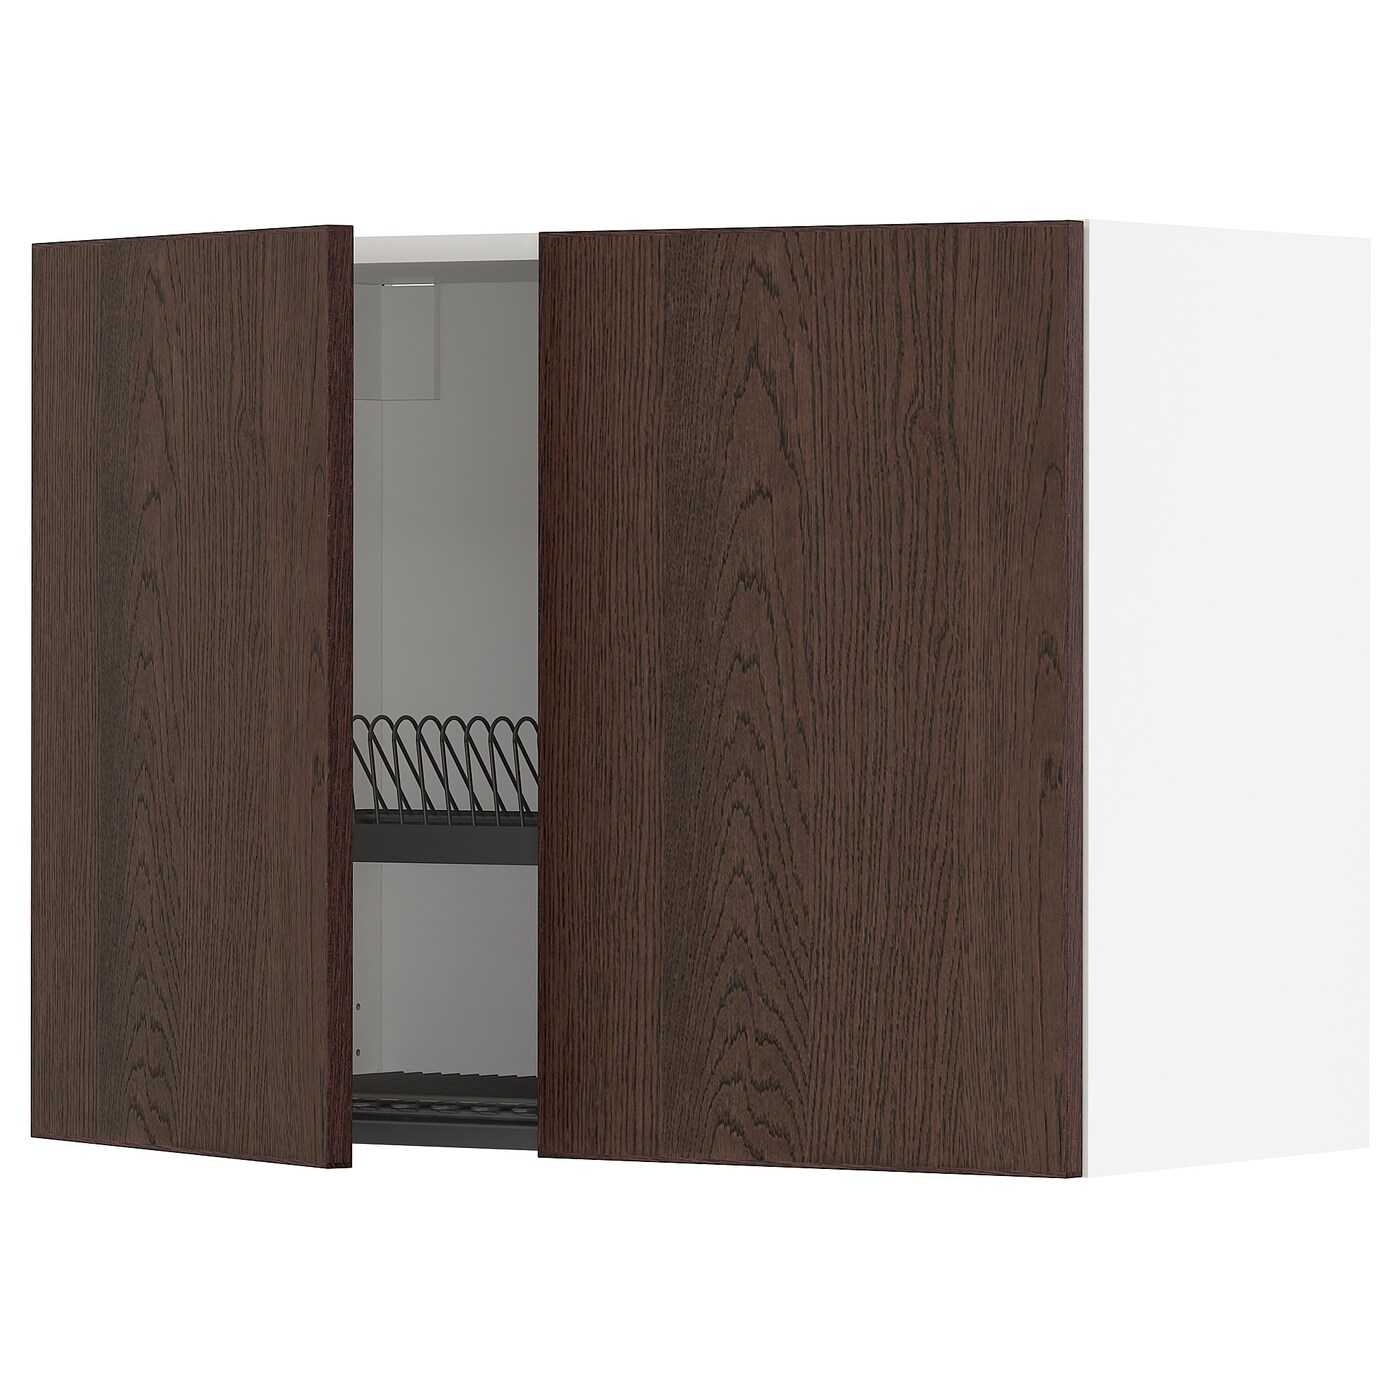 Навесной шкаф с сушилкой - METOD IKEA/ МЕТОД ИКЕА, 60х80 см, коричневый/белый